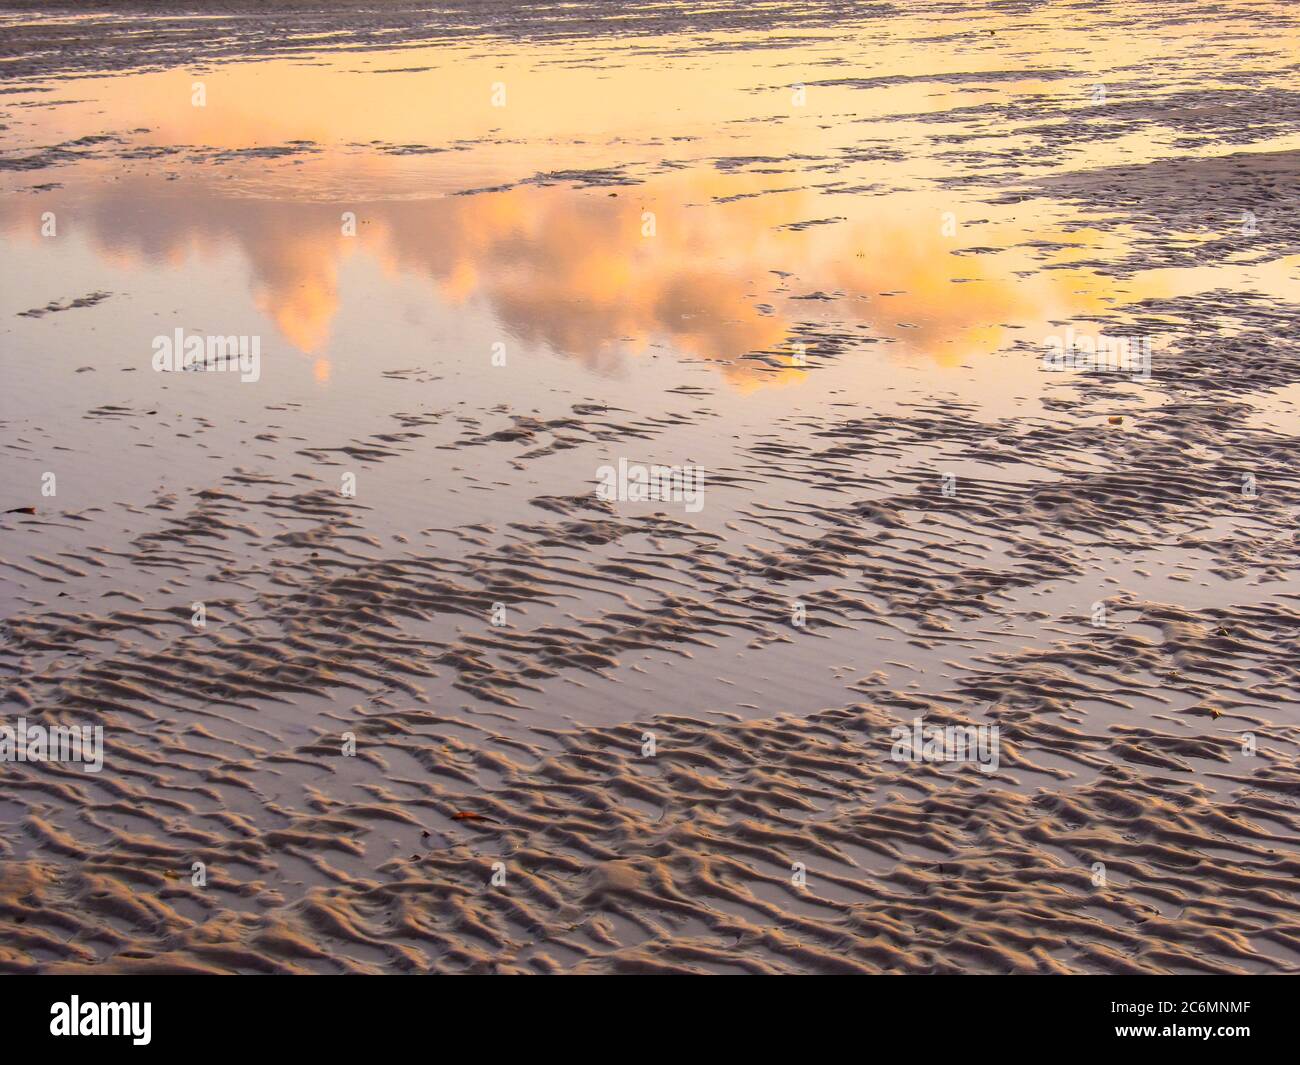 Una piscina marea sulla spiaggia sabbiosa di Vilanculos, Mozambico, che riflette il cielo e le nuvole, mostrando ancora gli ultimi resti dei colori dell'alba Foto Stock